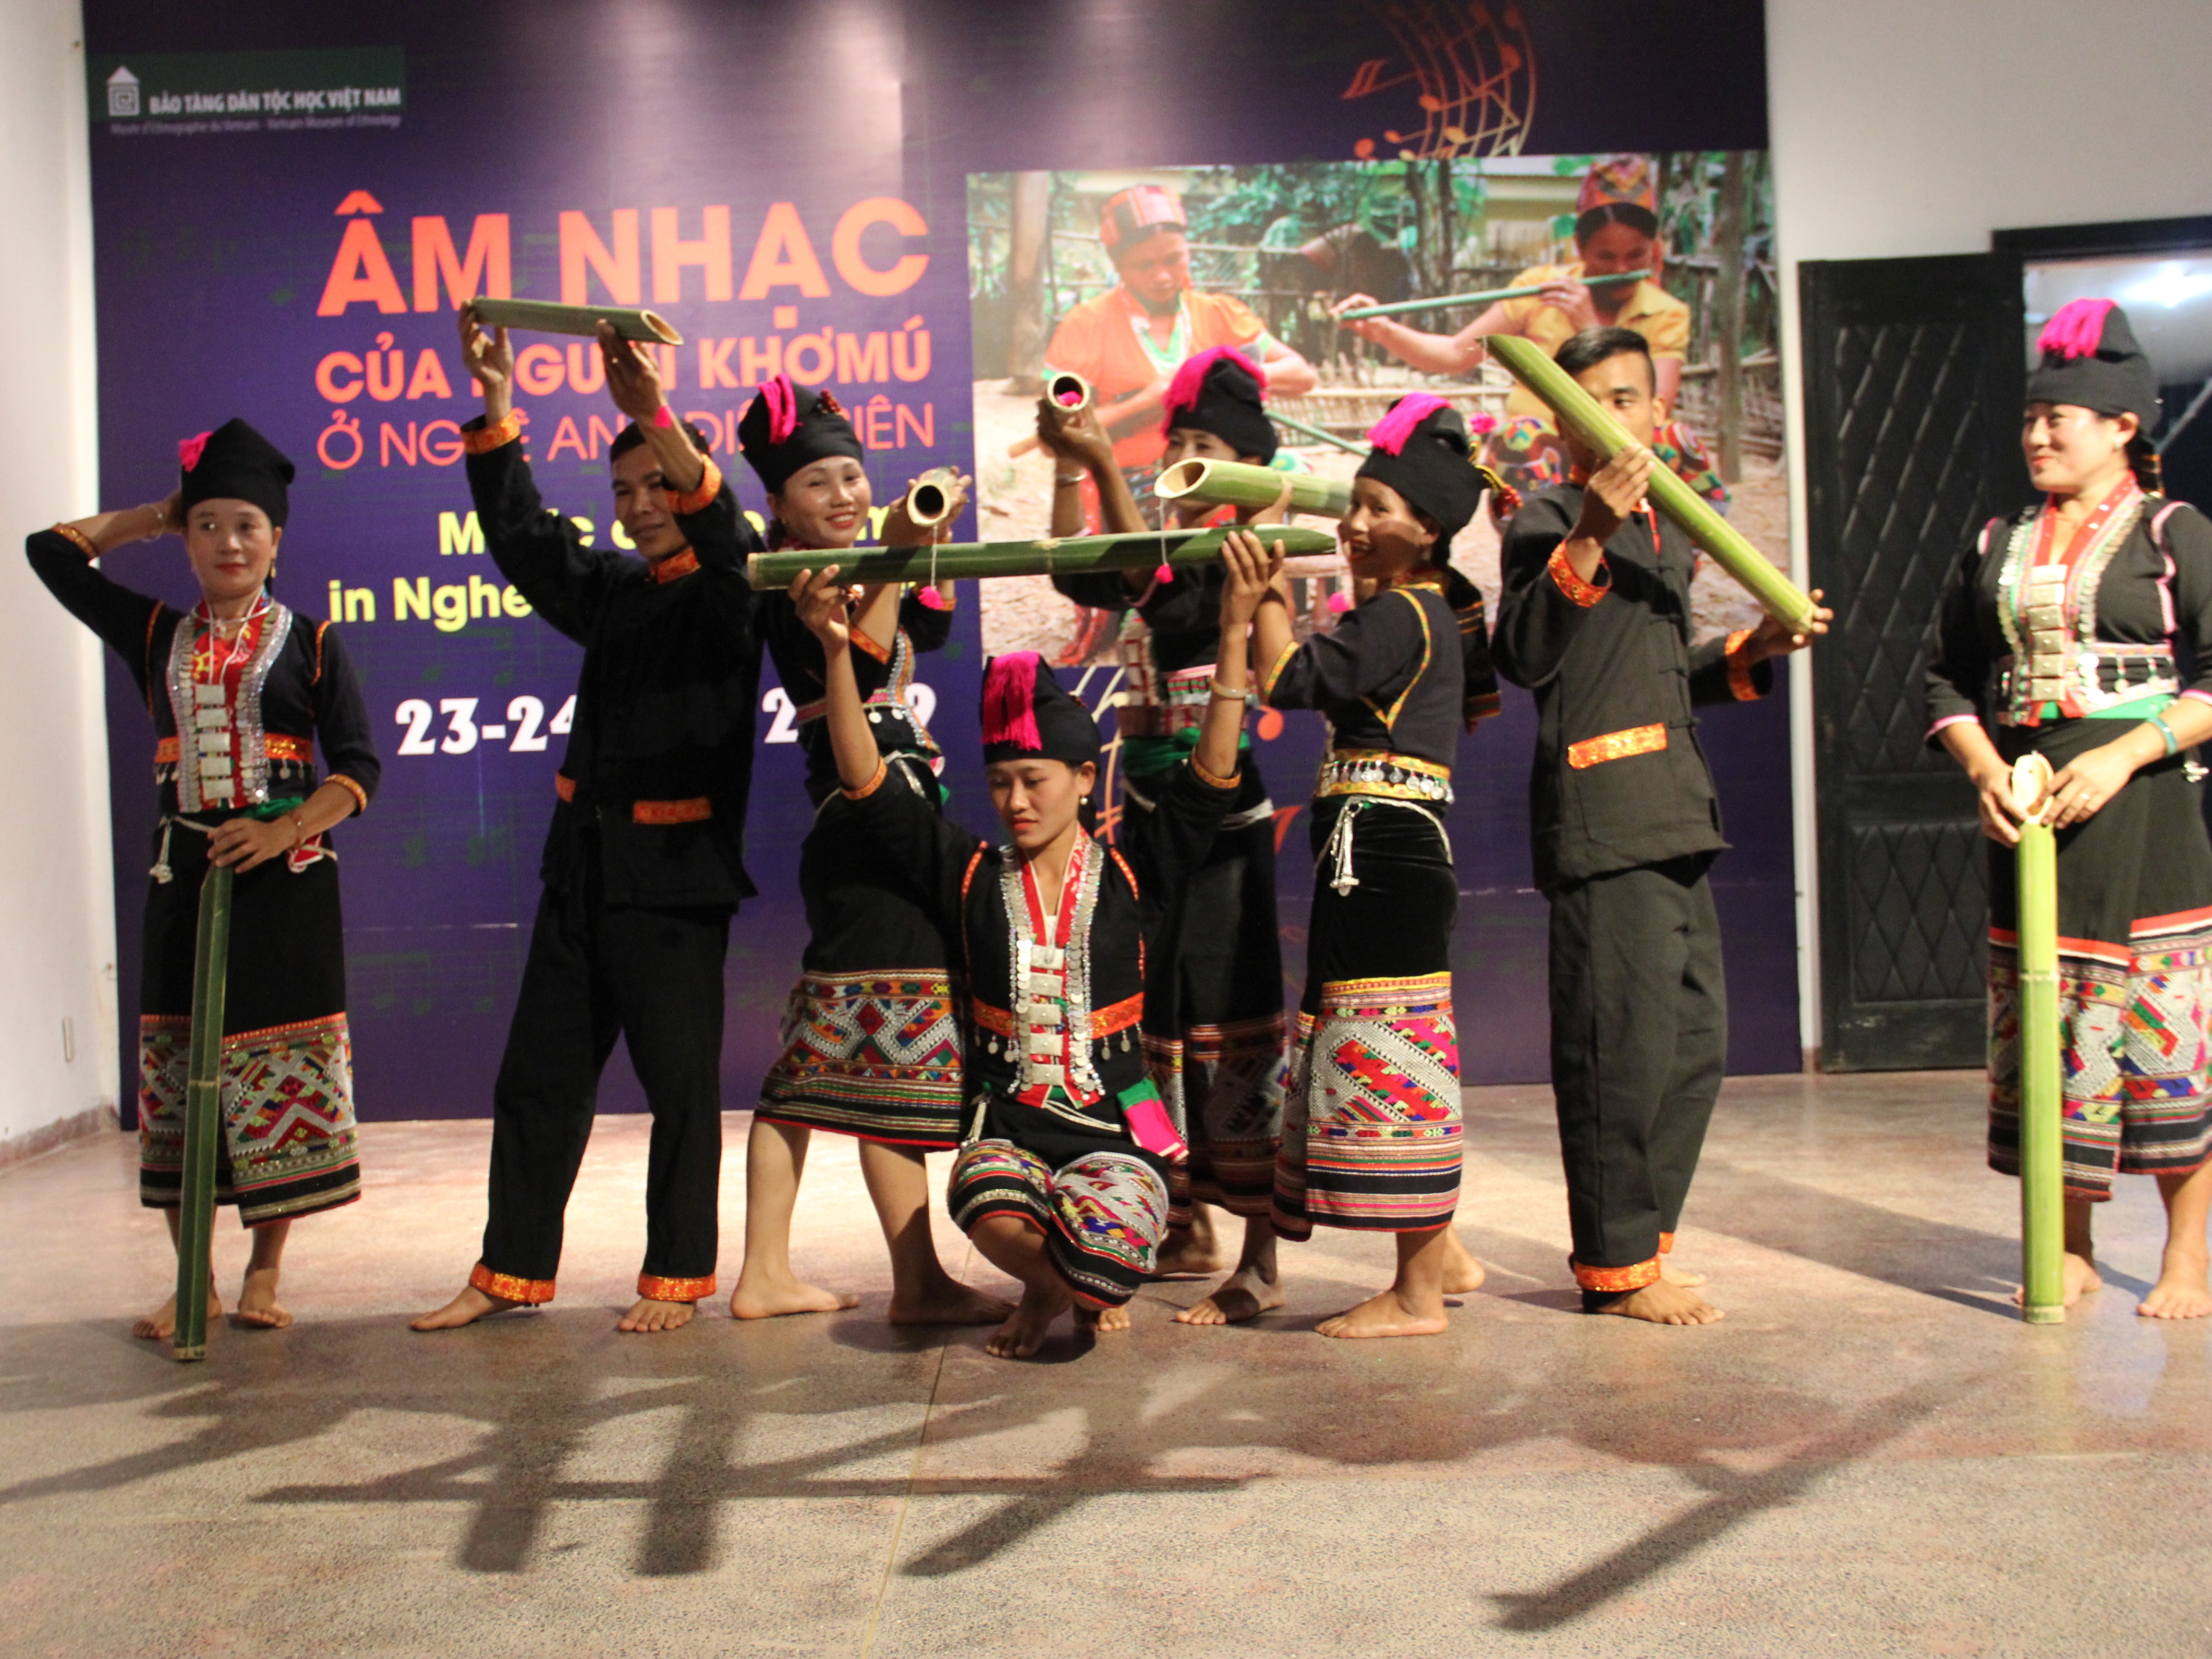 Trình diễn điệu múa boòng bụ (dỗ ống) của người Khơmú ở Điện Biên